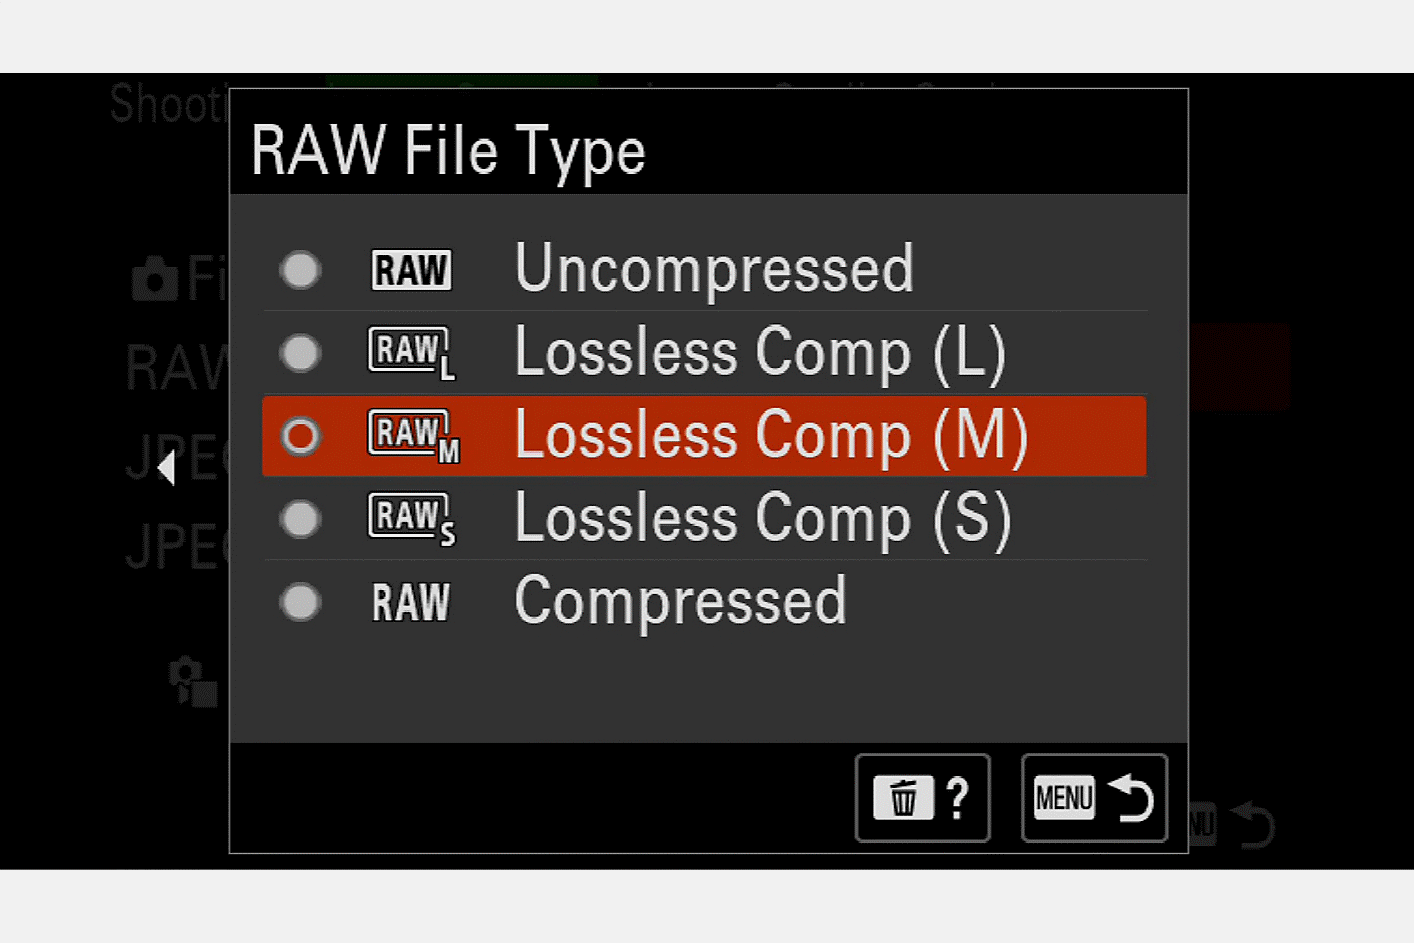 Abbildung des Kamera-Displays zur Auswahl des RAW-Dateityps